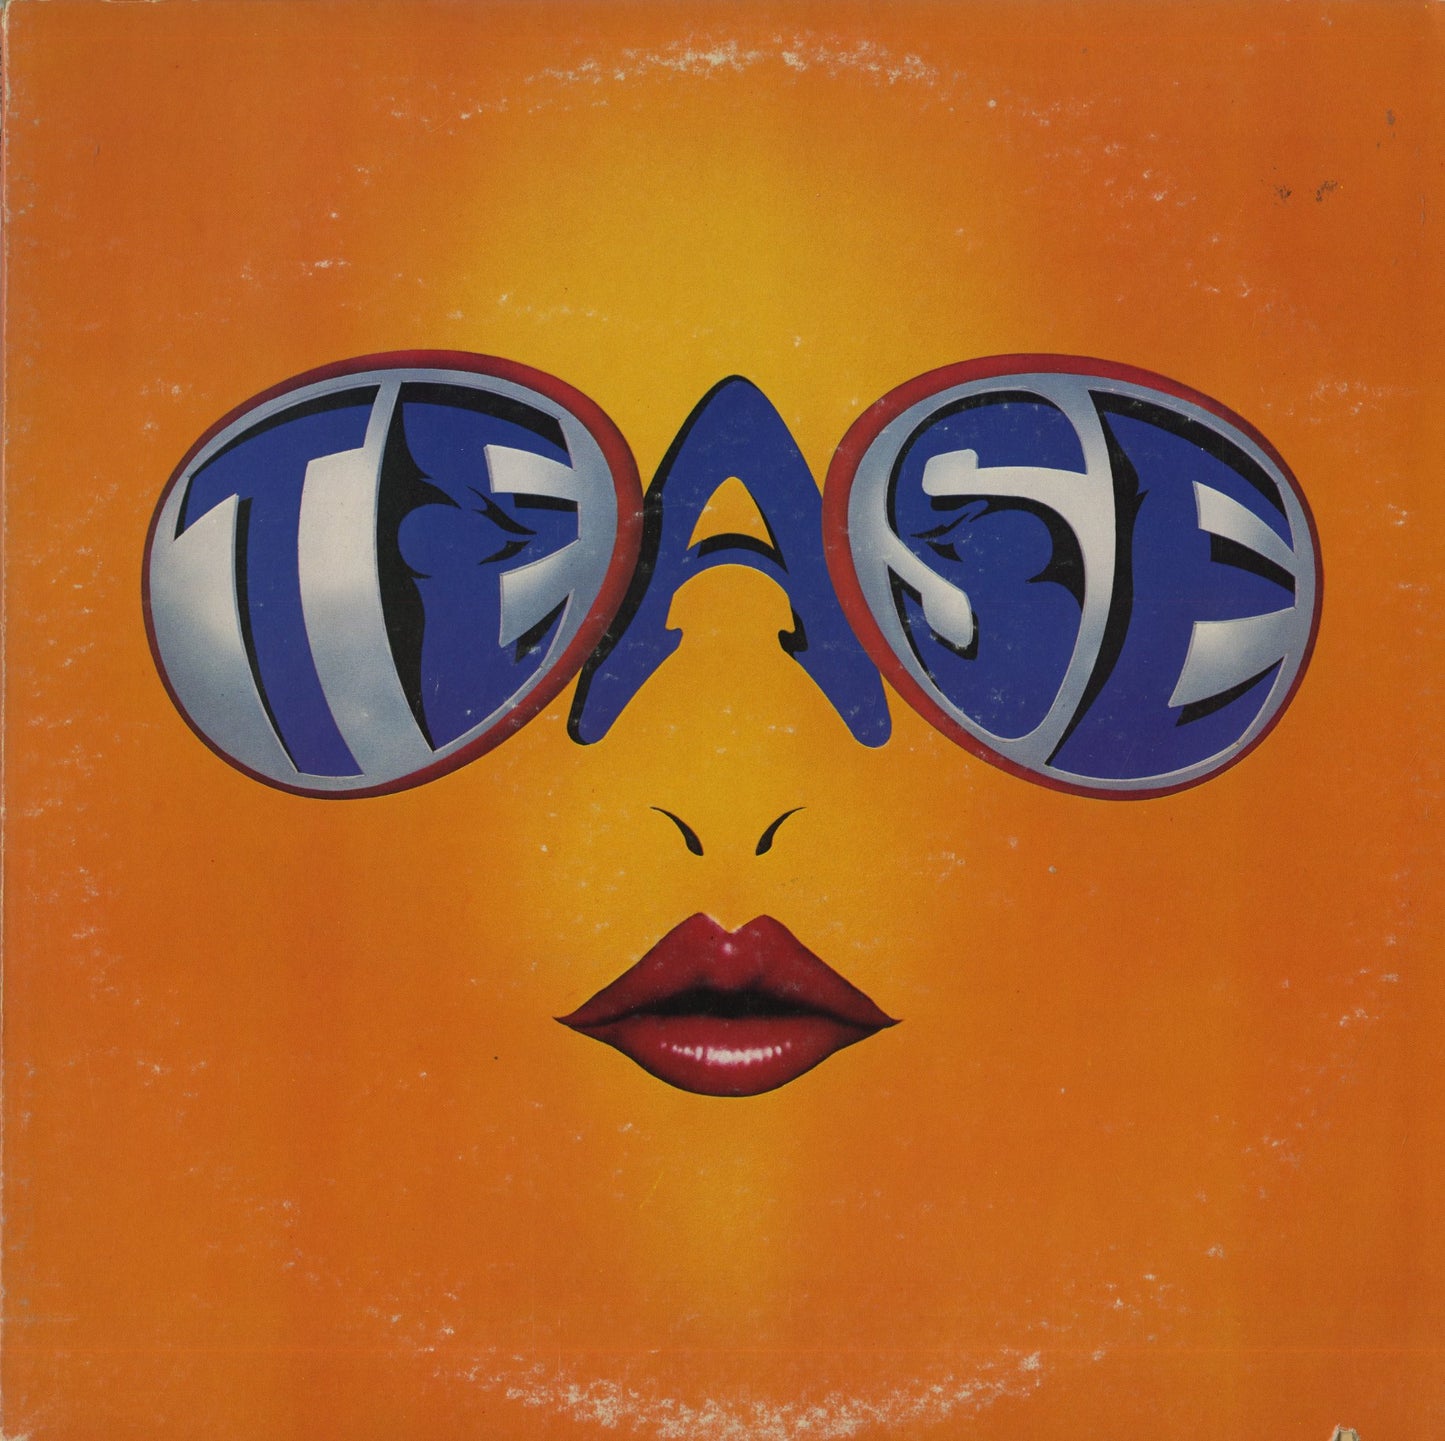 Tease / Tease (1983) (AFL1-4597)